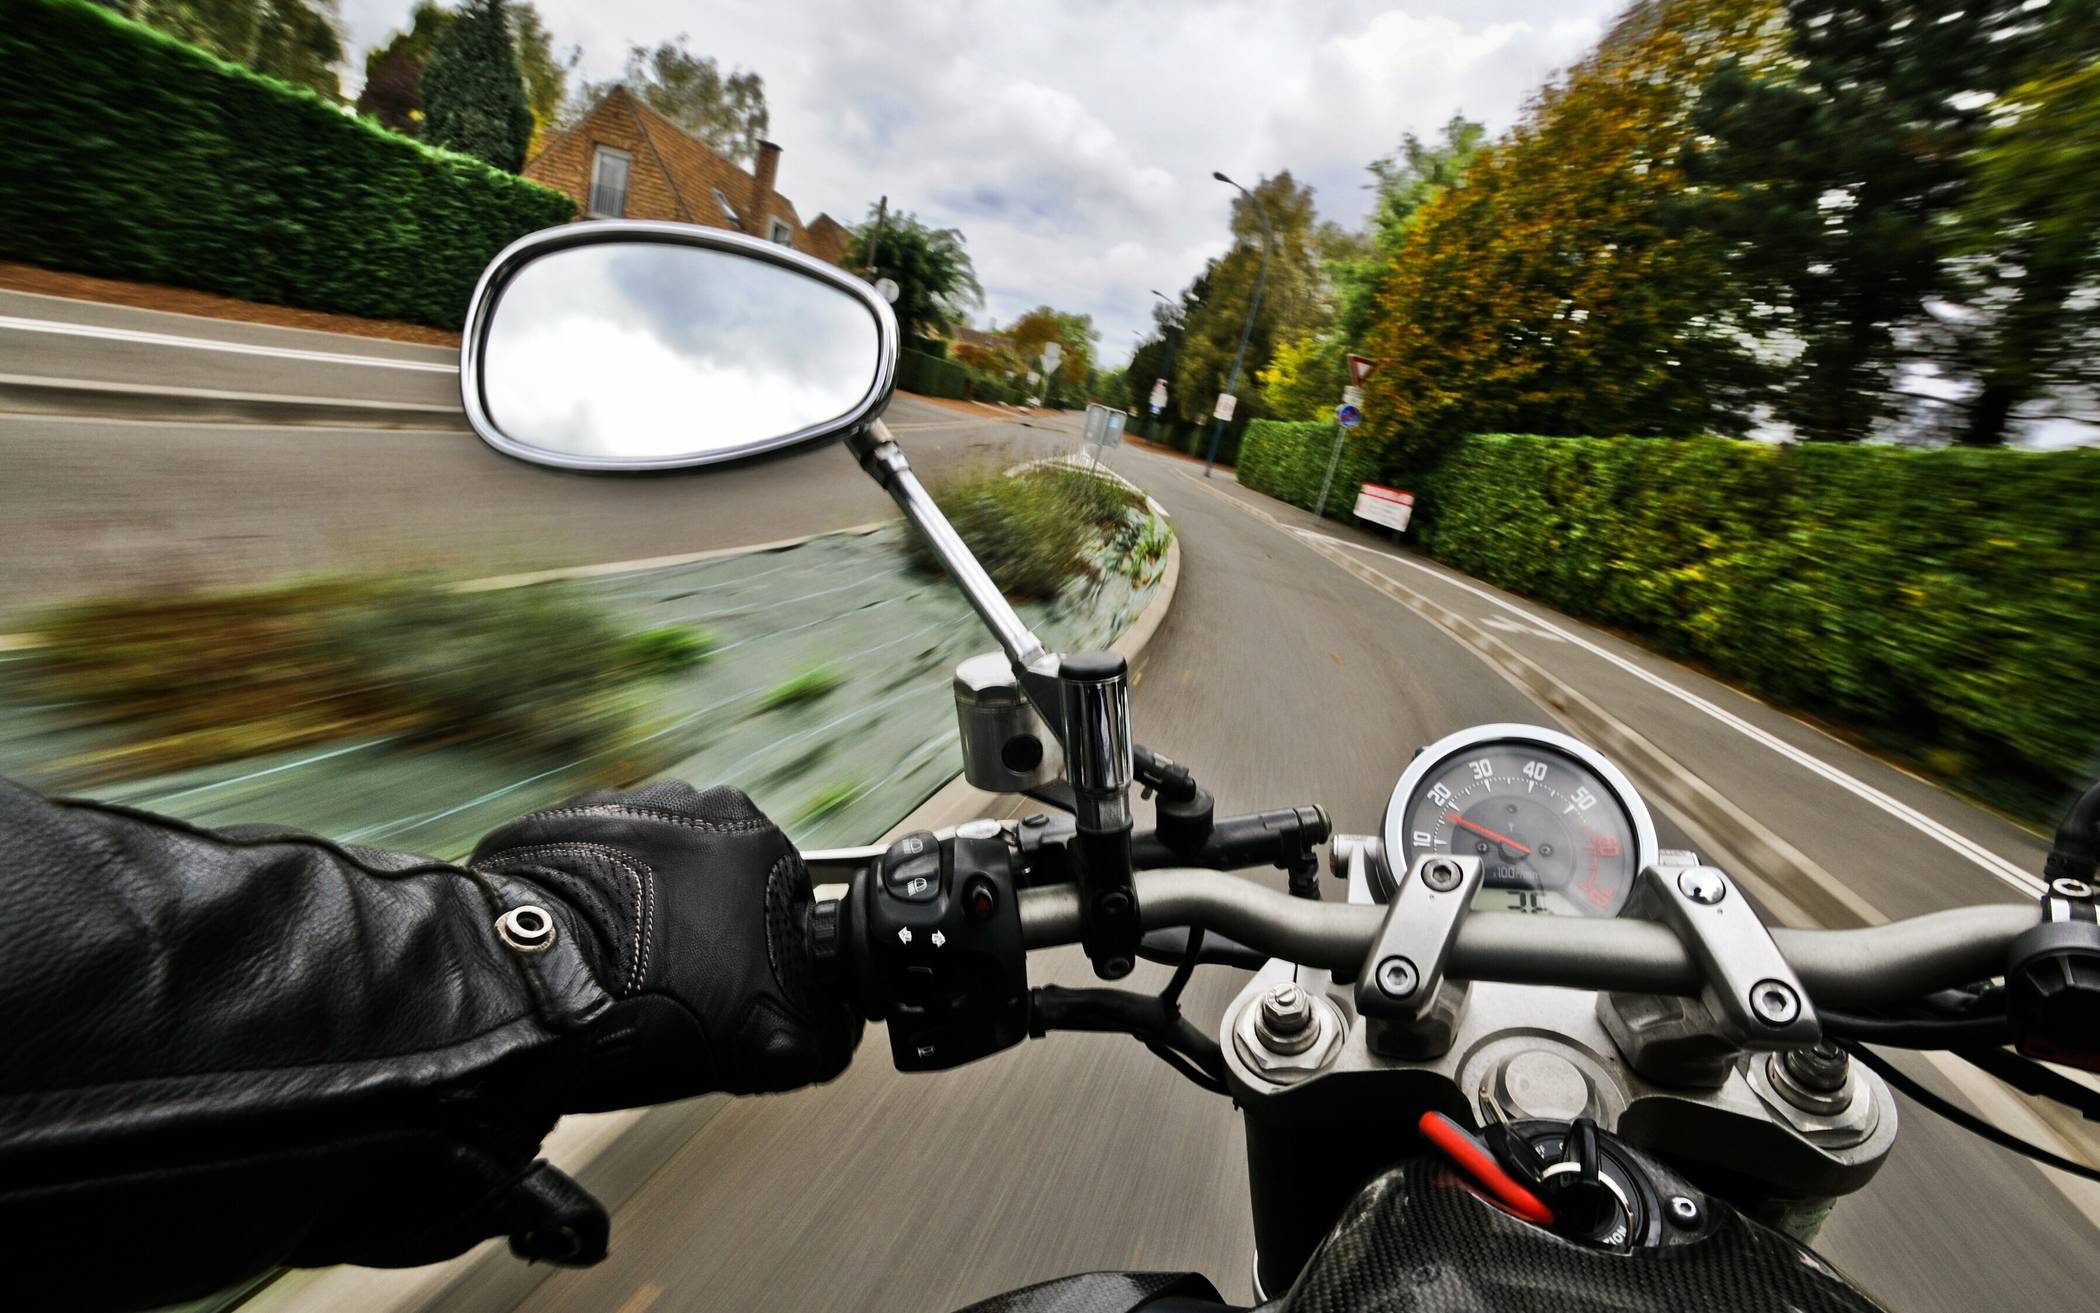 Motorräder zu schnell und zu laut?